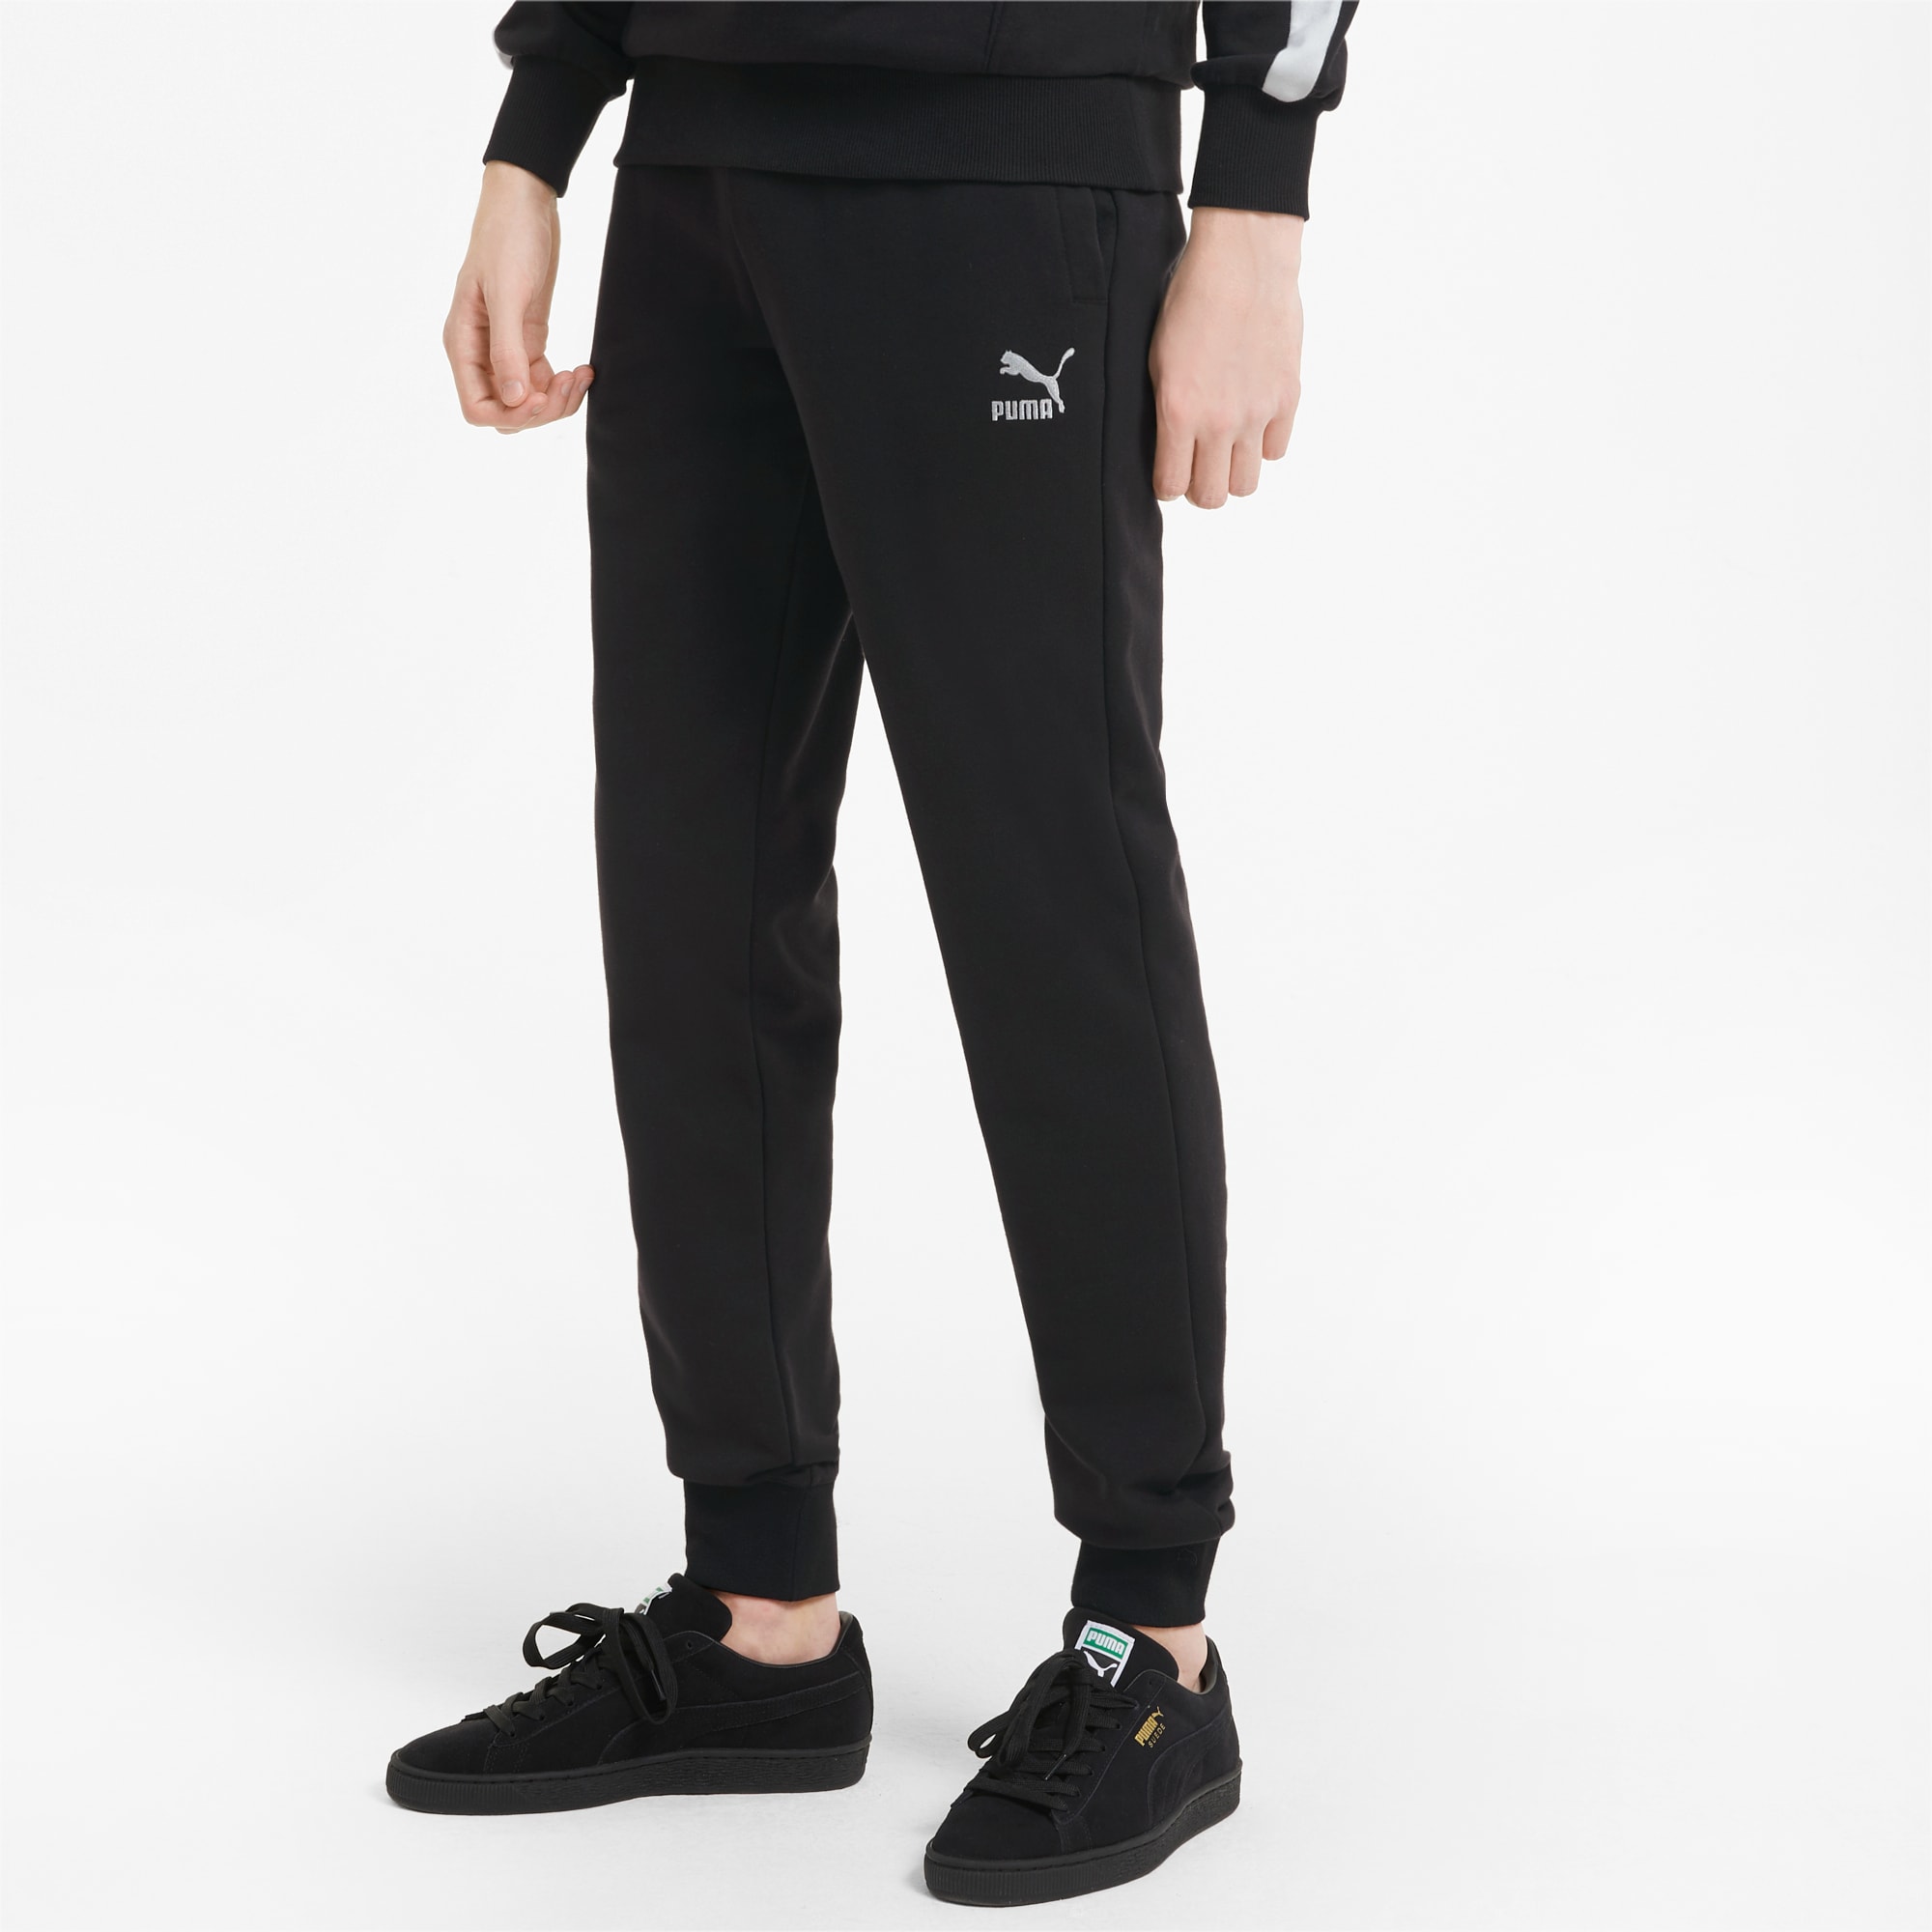 PUMA Classics Cuffed Men's Sweatpants, Black, Size XS, Clothing